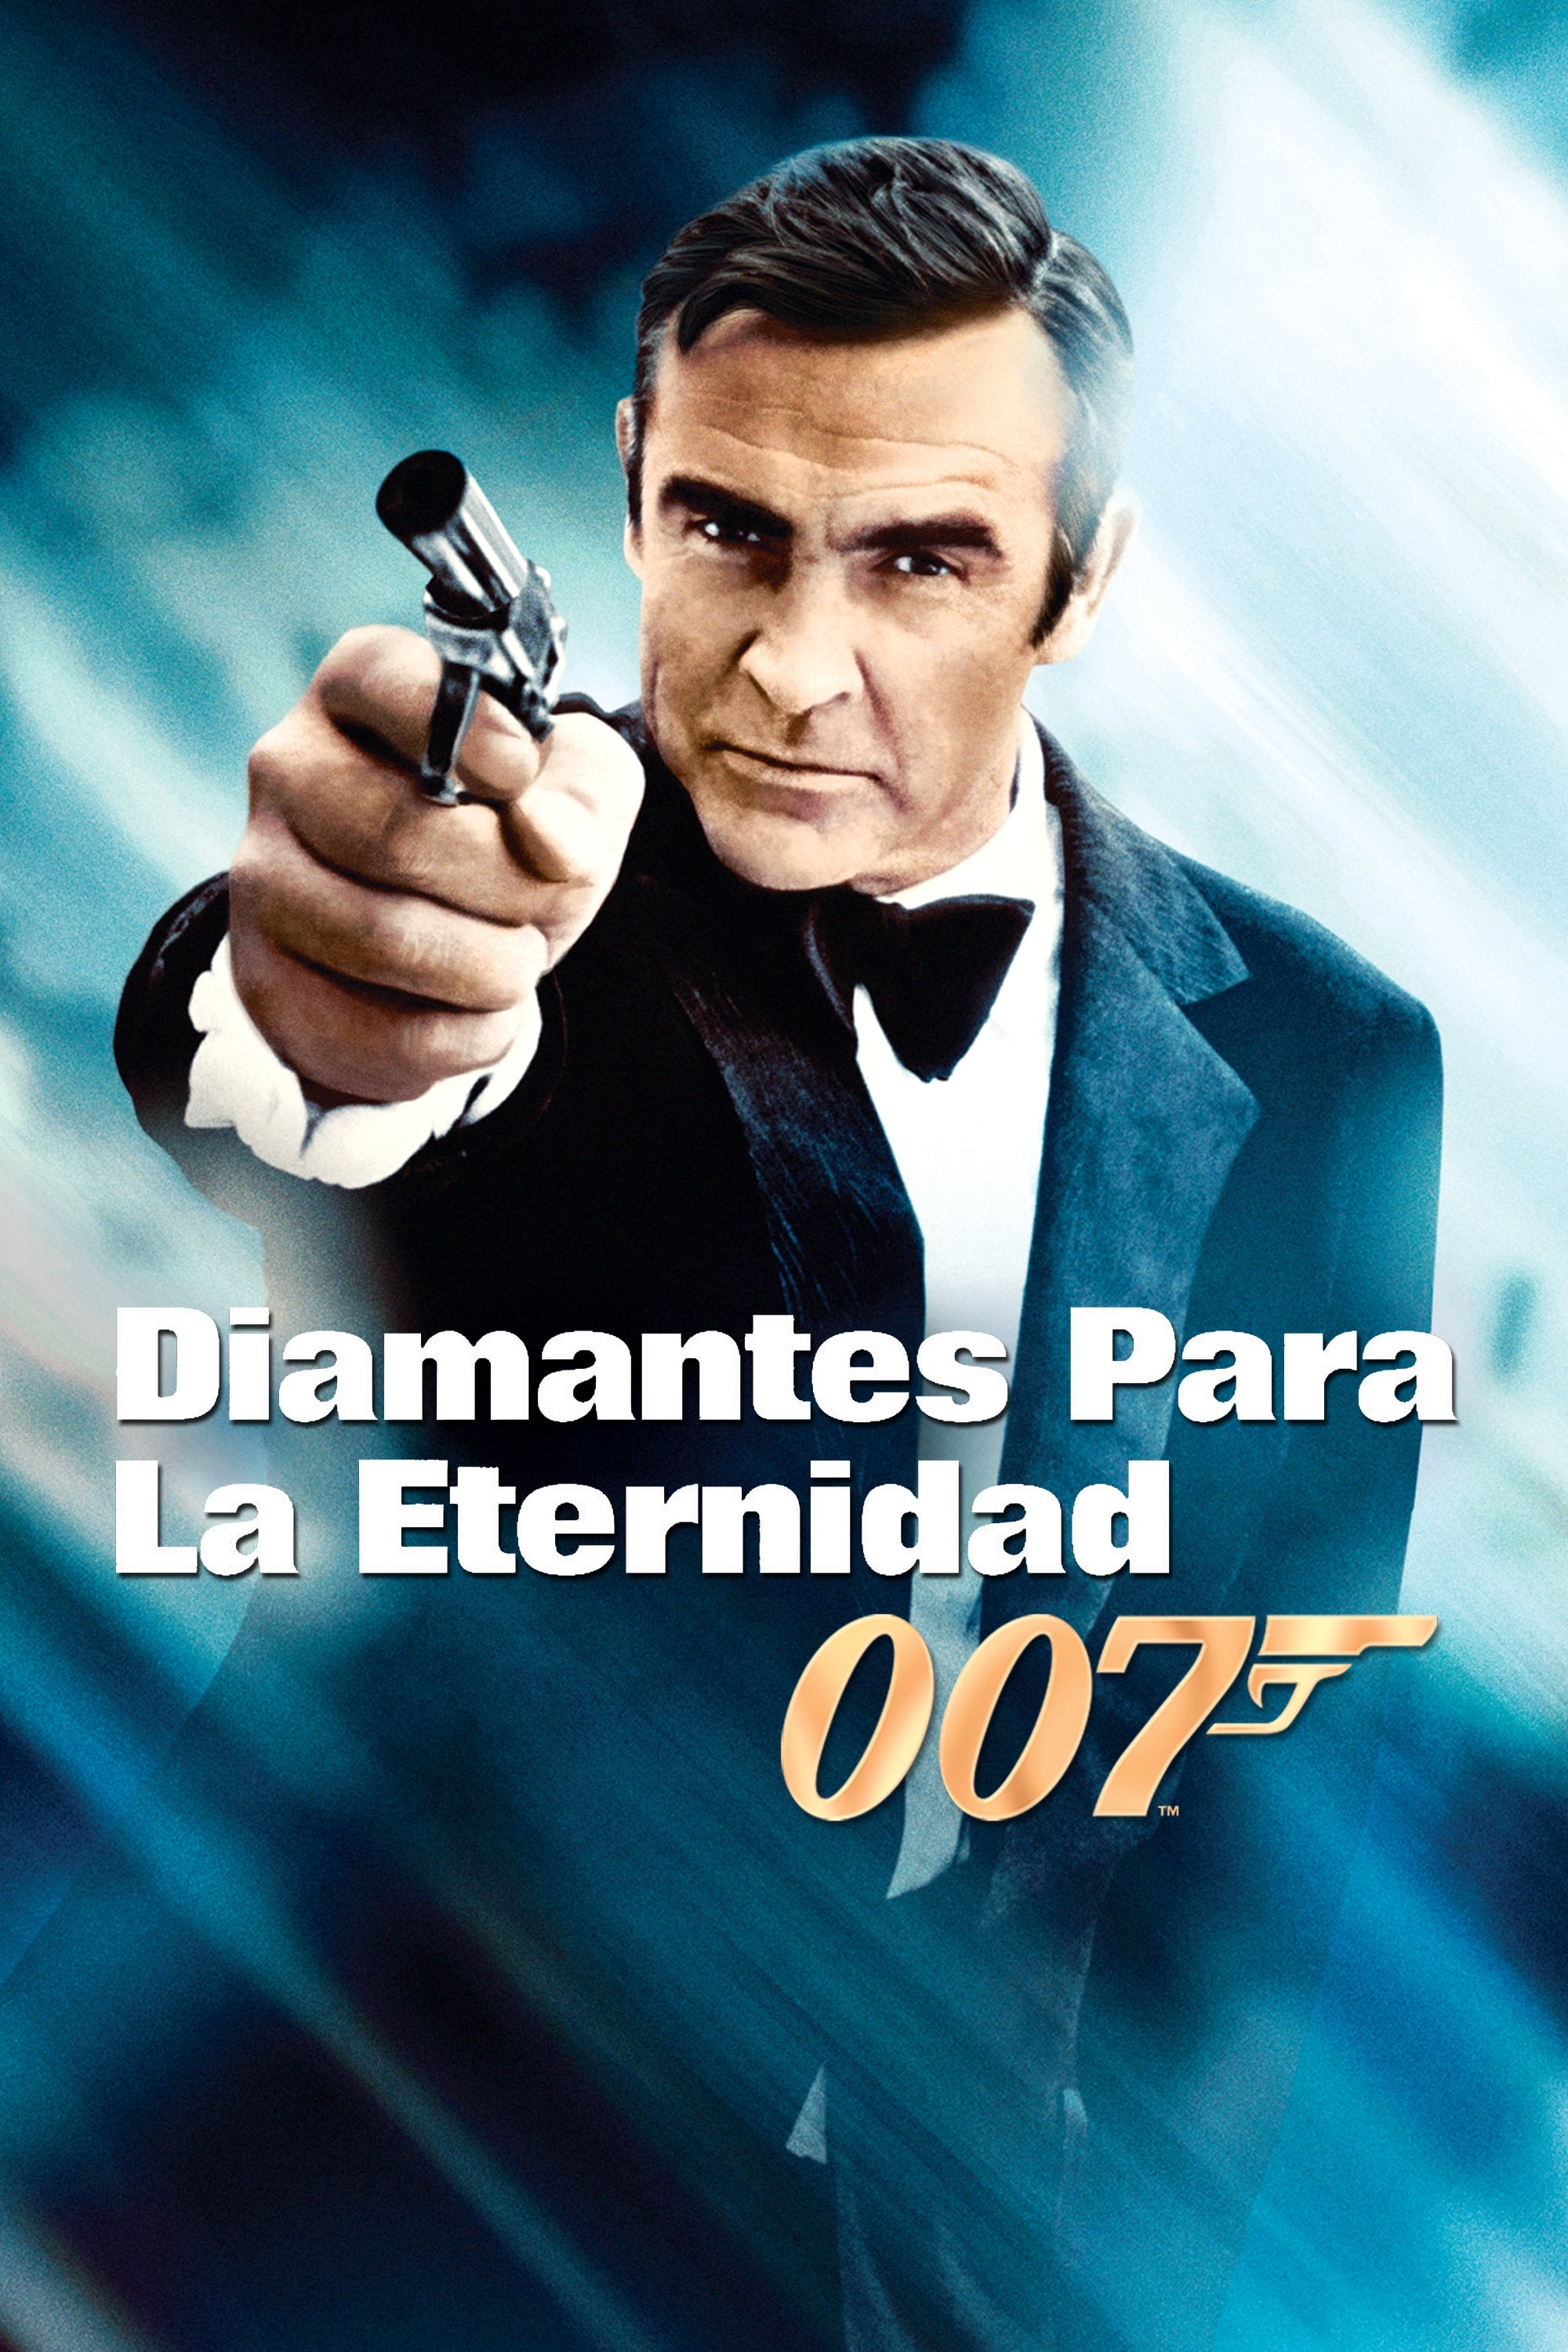 007 Los Diamantes Son Eternos